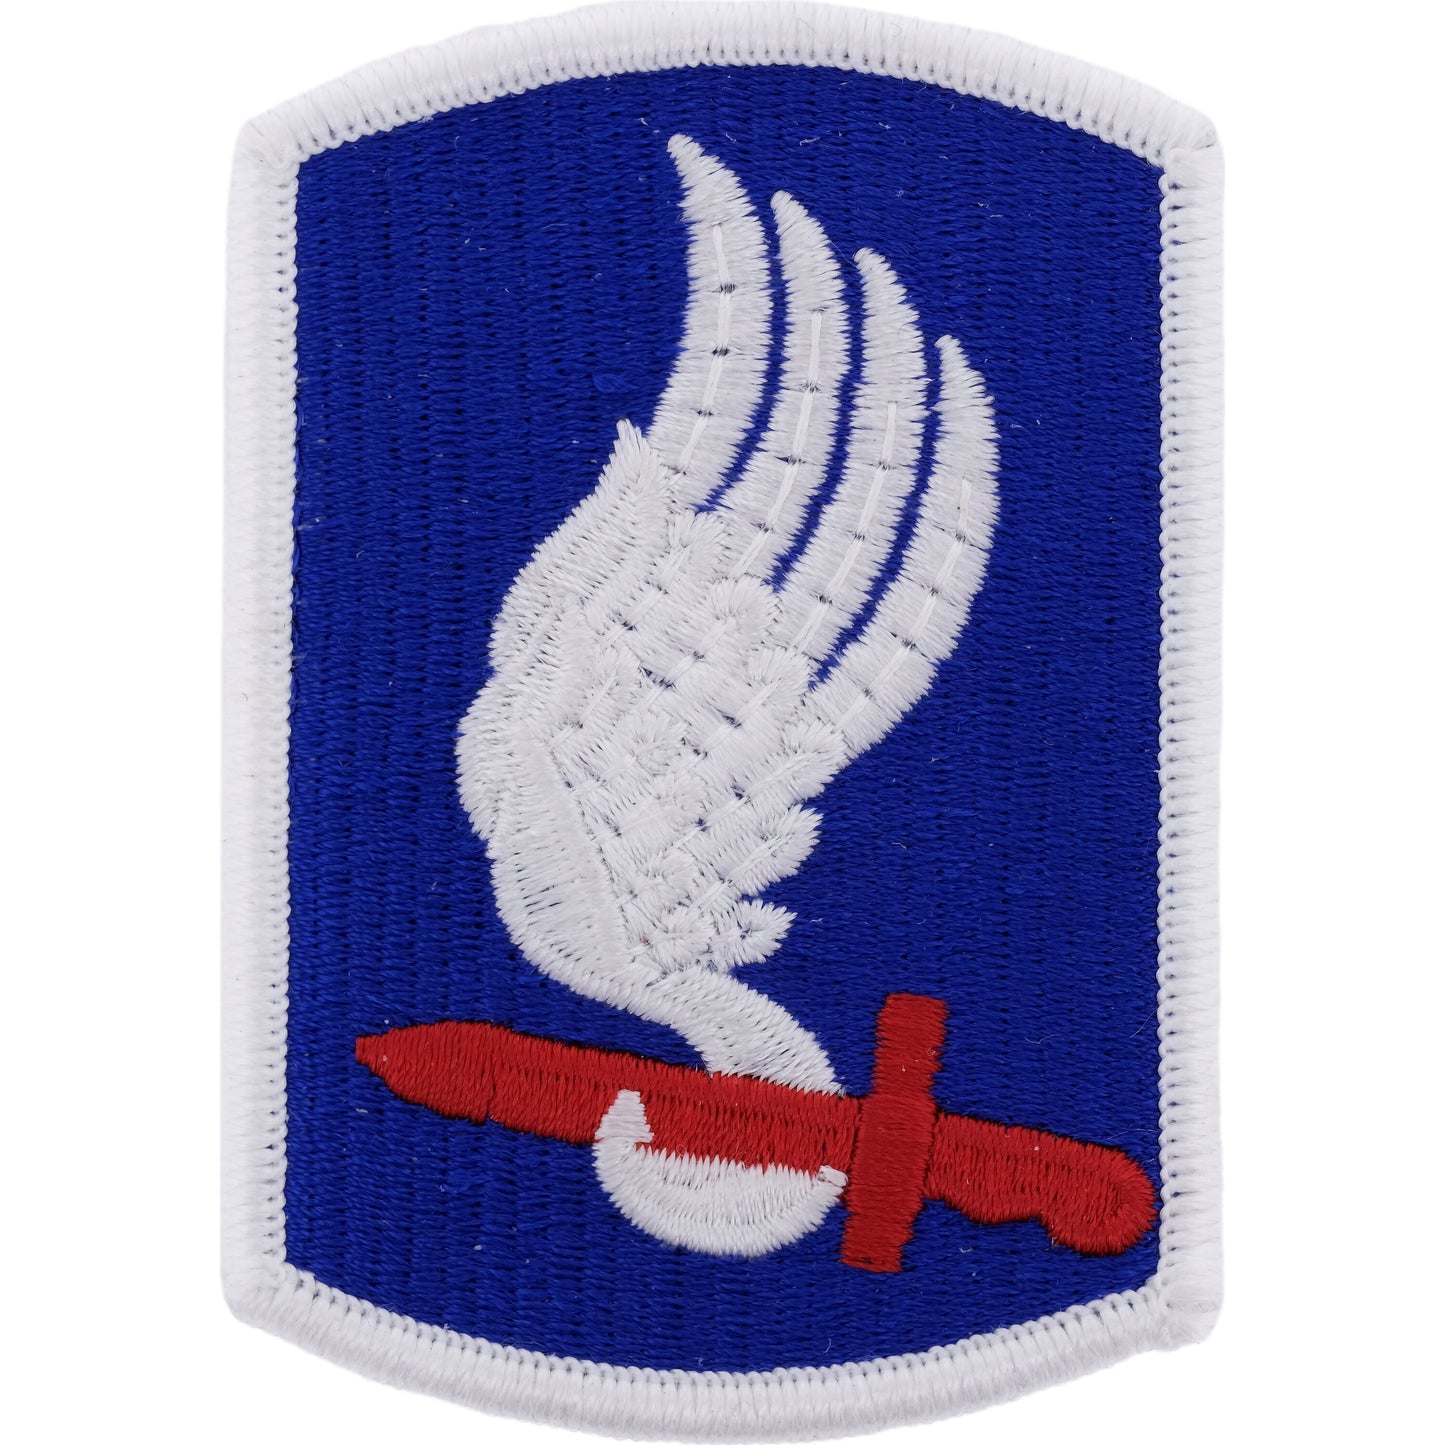 U.S Army 173rd Airborne Brigade Class A Patch 2"